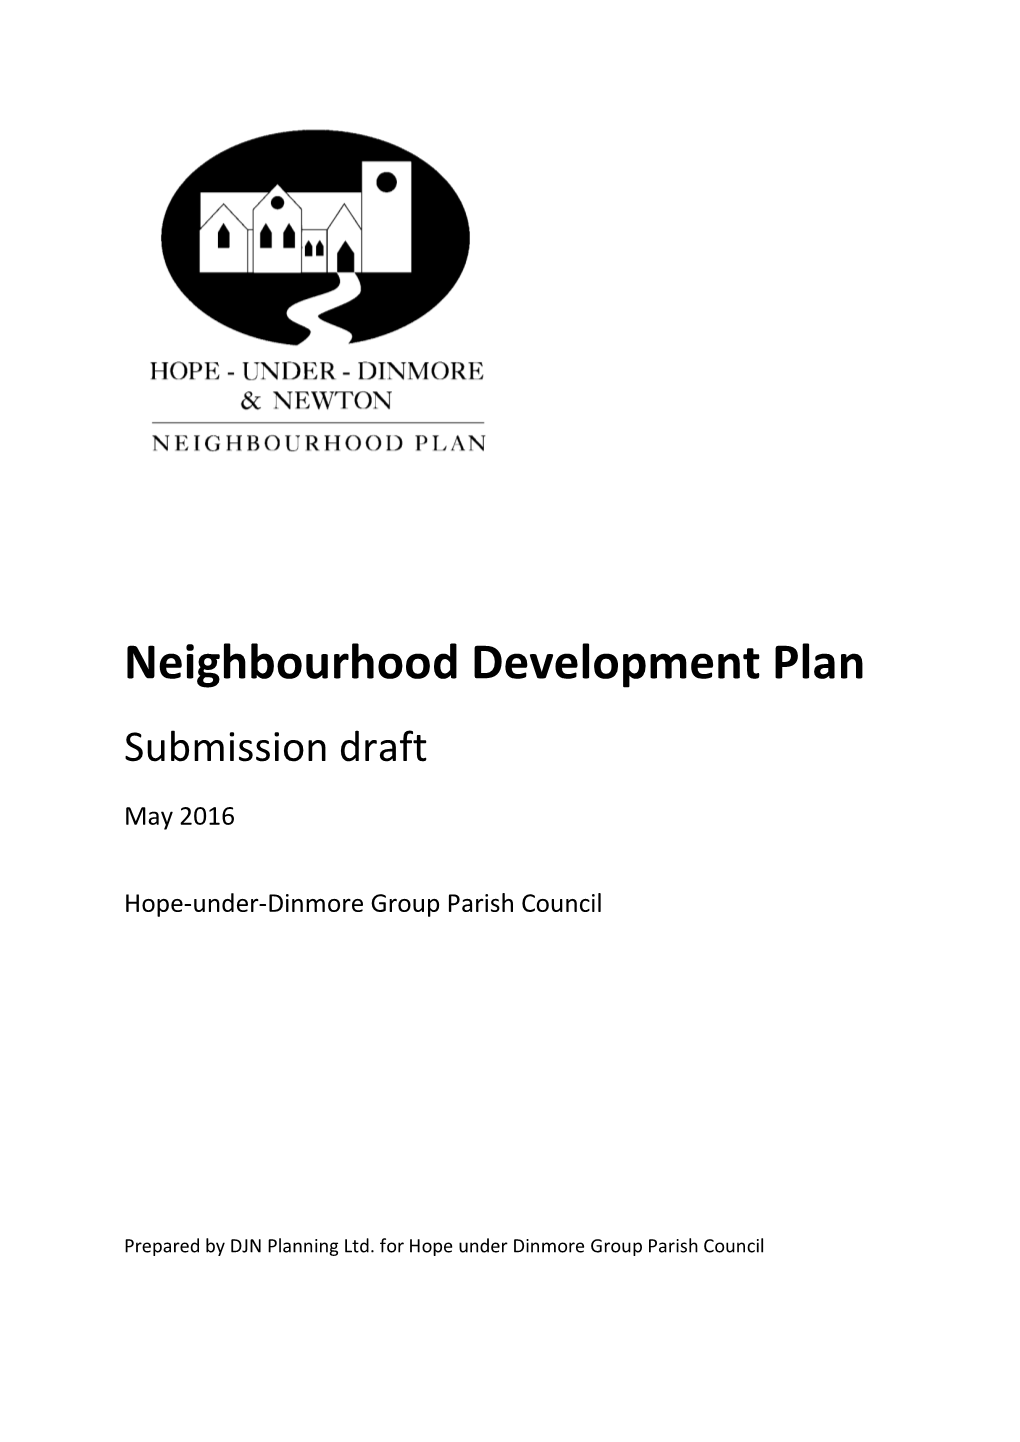 Hope Under Dinmore Neighbourhood Development Plan